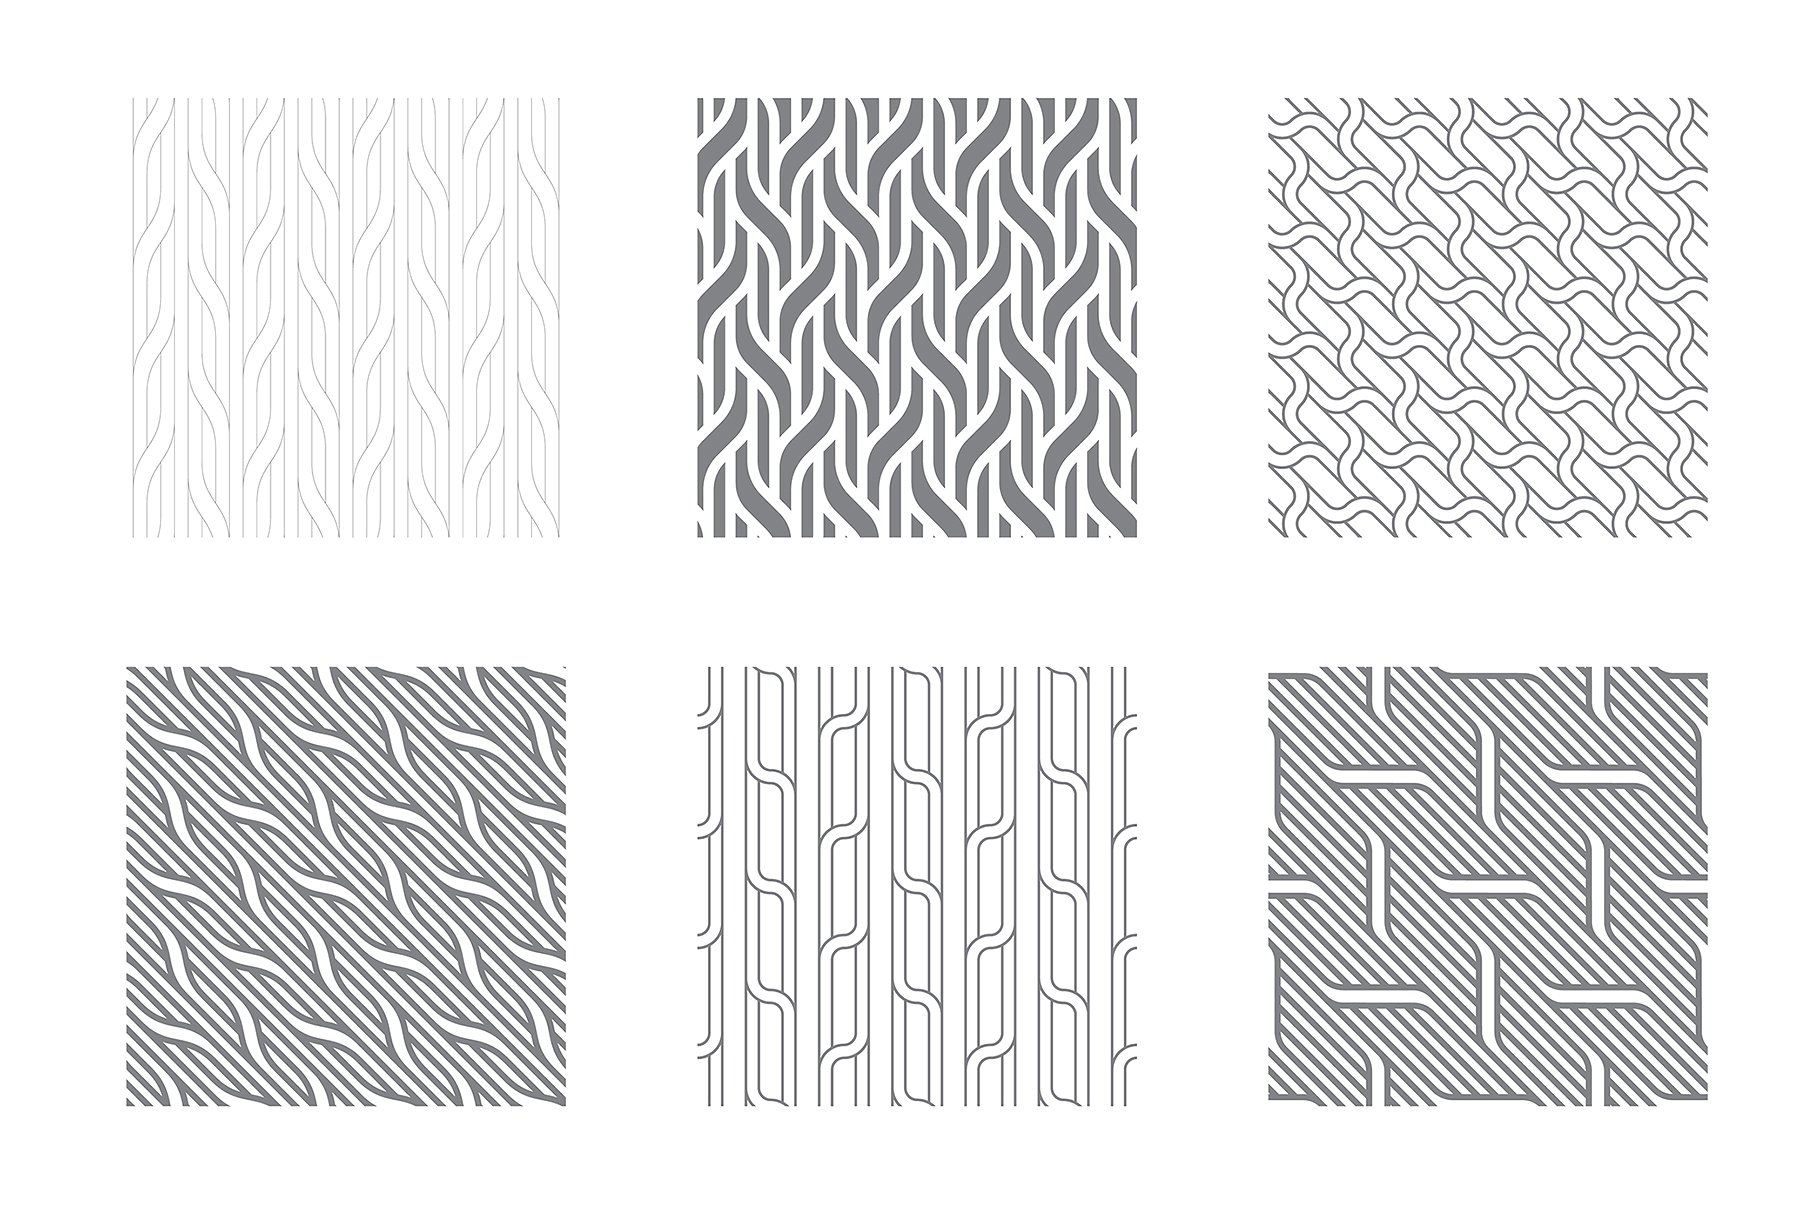 各种波纹无缝纹理图案素材 Rippled Seamless Patterns Bundle v.2插图(3)